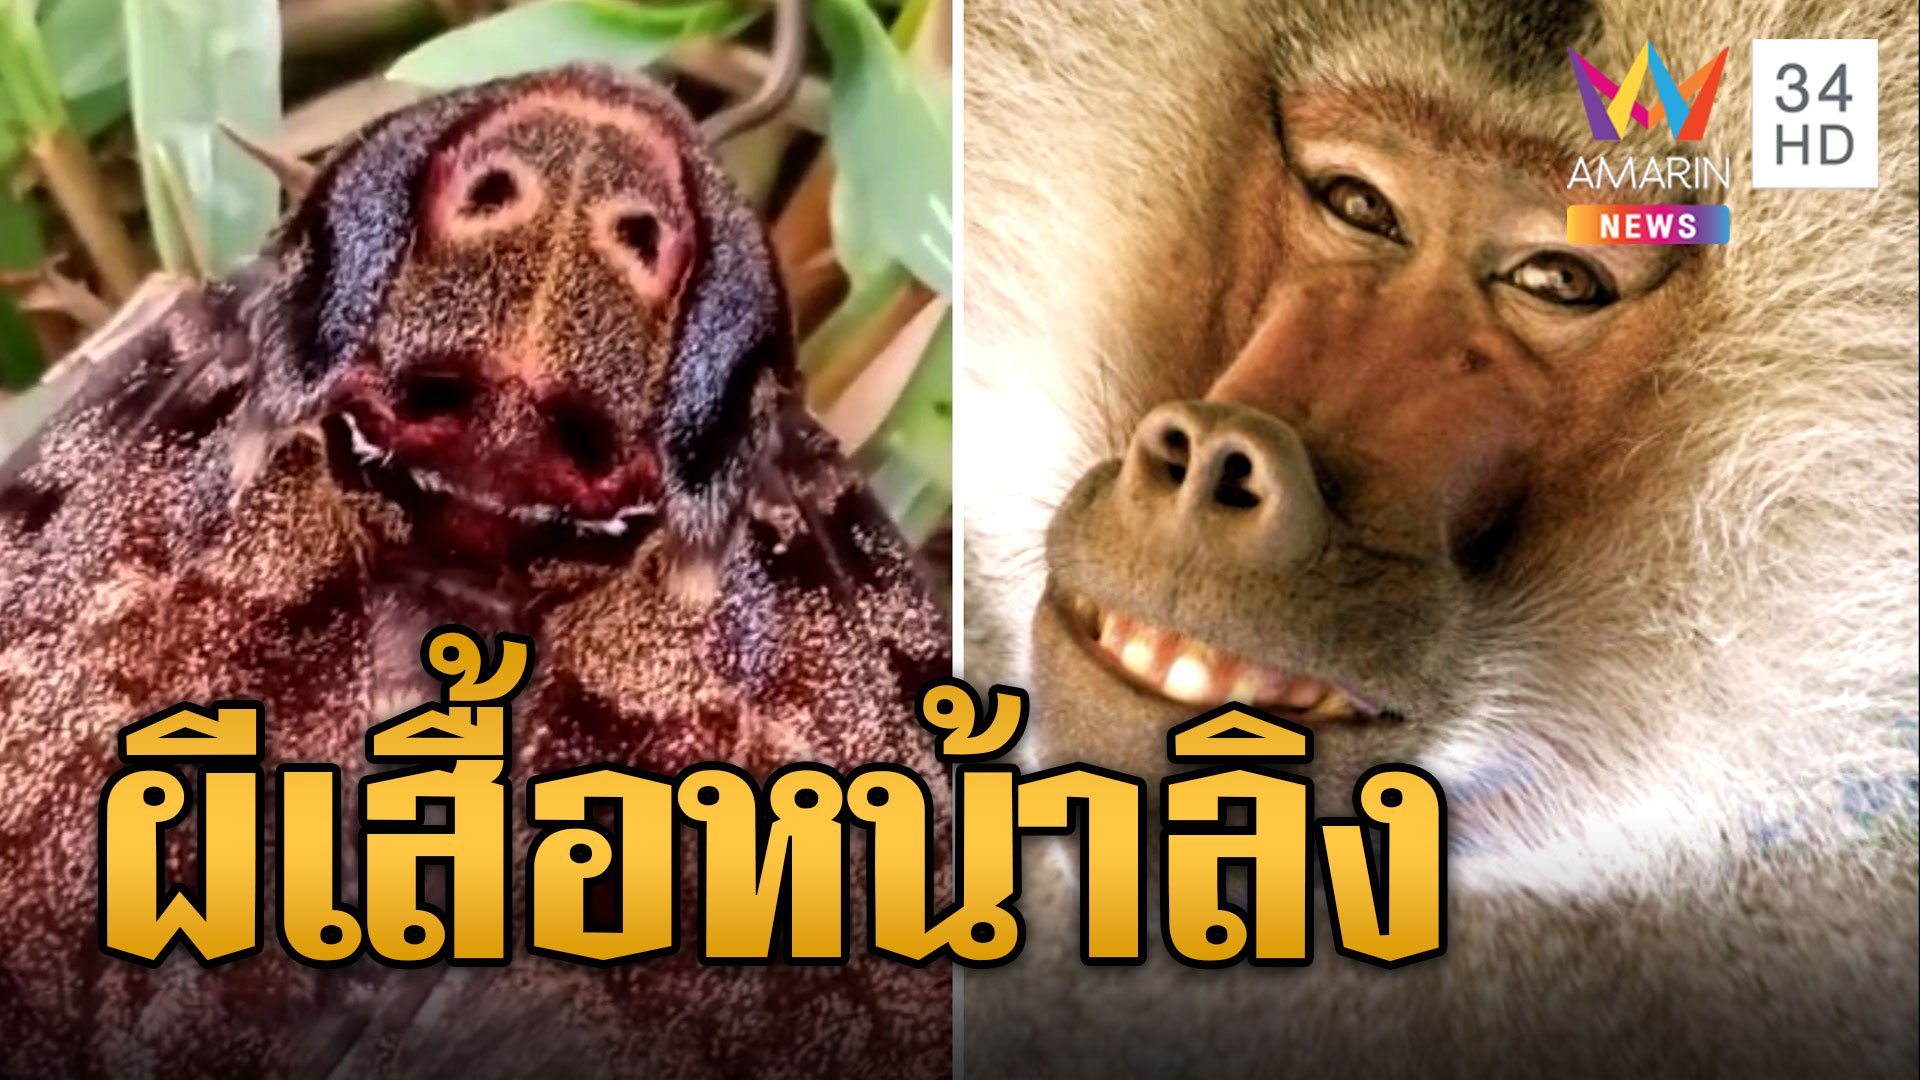 ฮือฮา! ผีเสื้อแปลก หน้าคล้ายลิงบาบูน | ข่าวอรุณอมรินทร์ | 3 พ.ย. 66 | AMARIN TVHD34